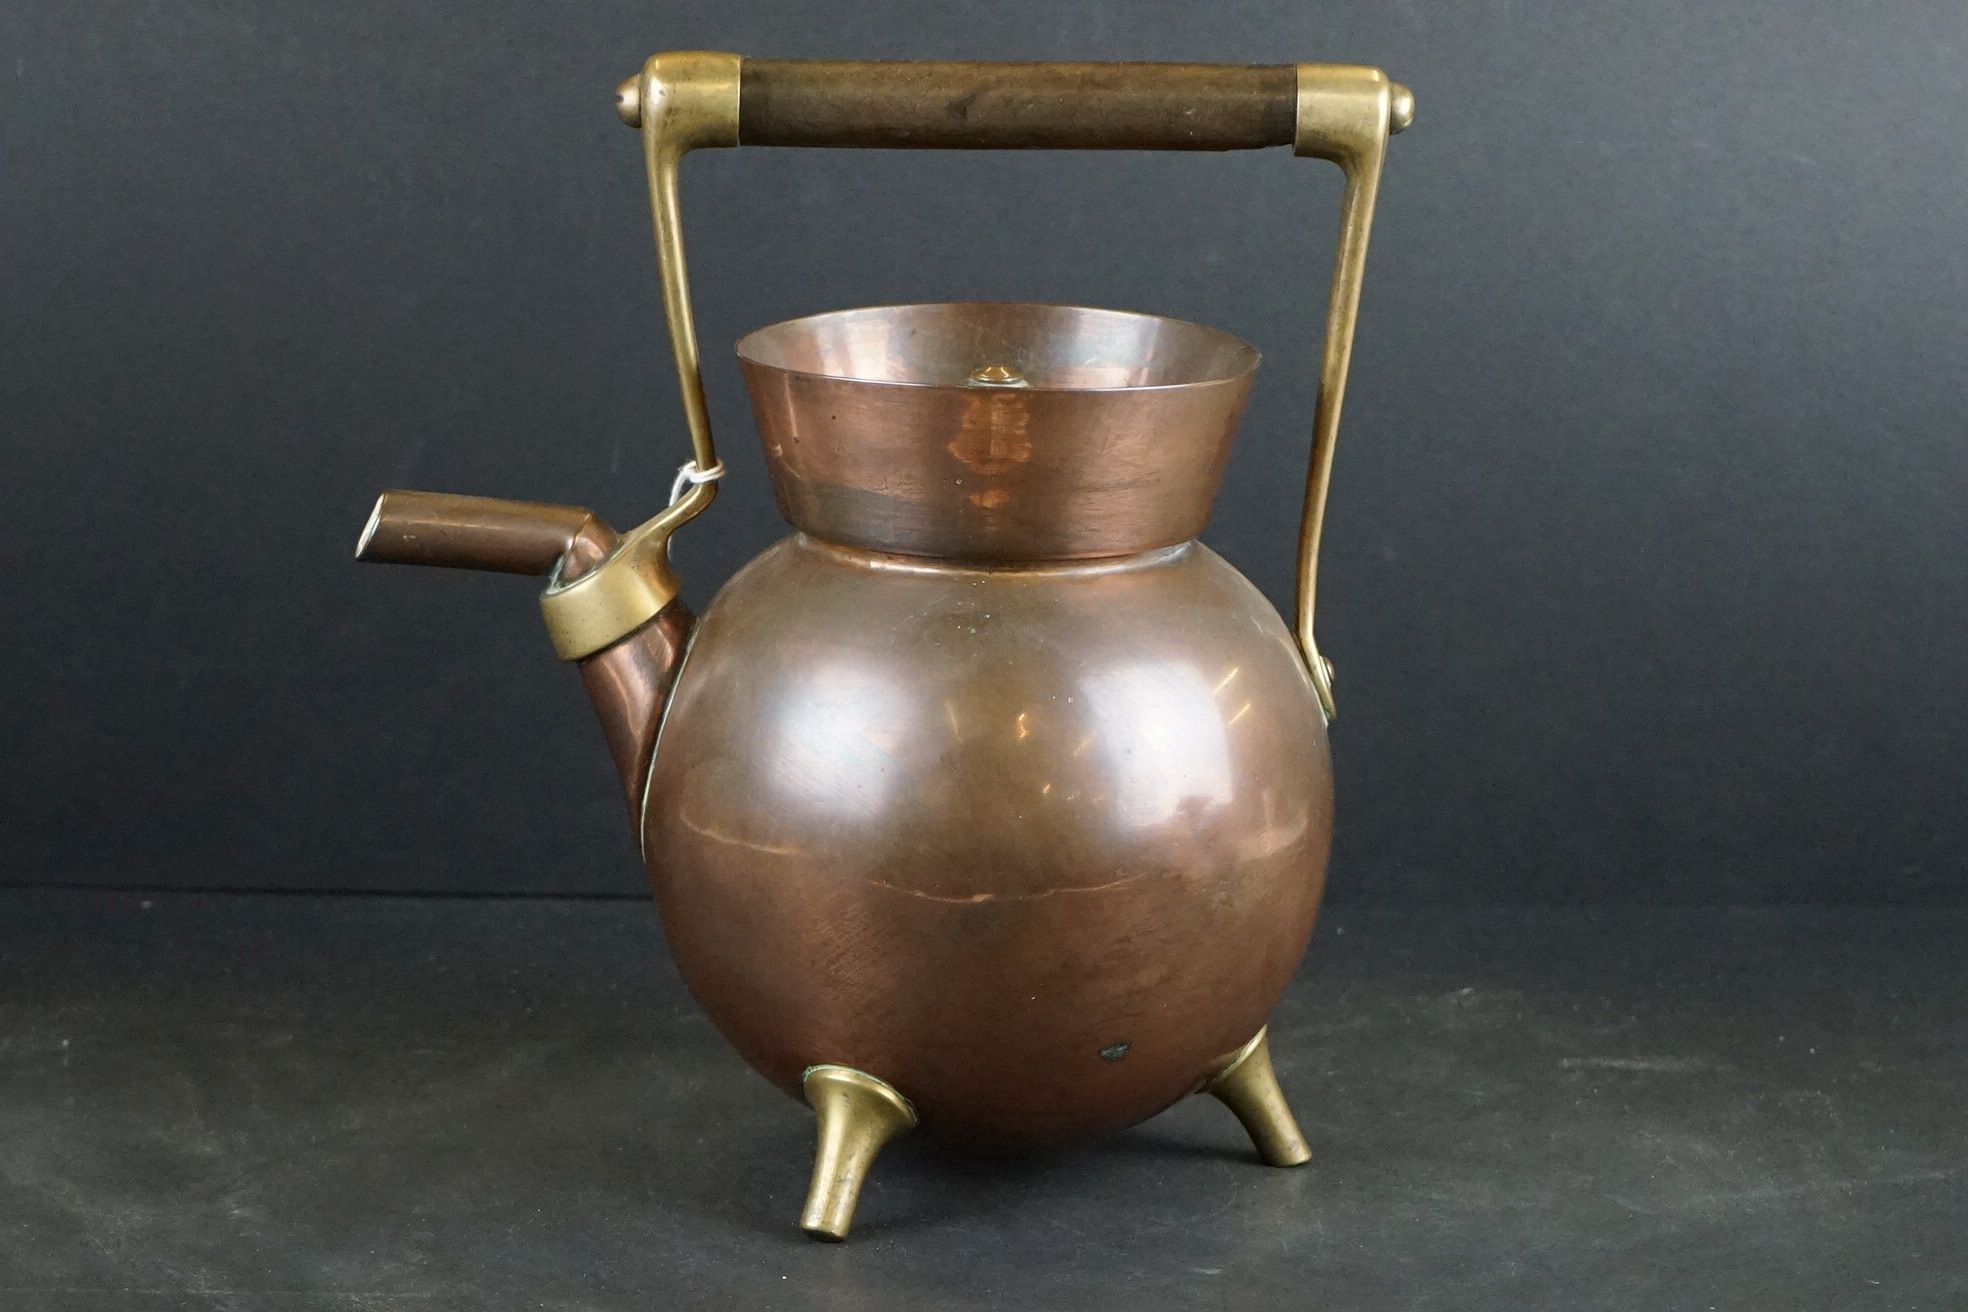 An antique Benham & Froud London, copper kettle c.1885 Christopher Dresser.